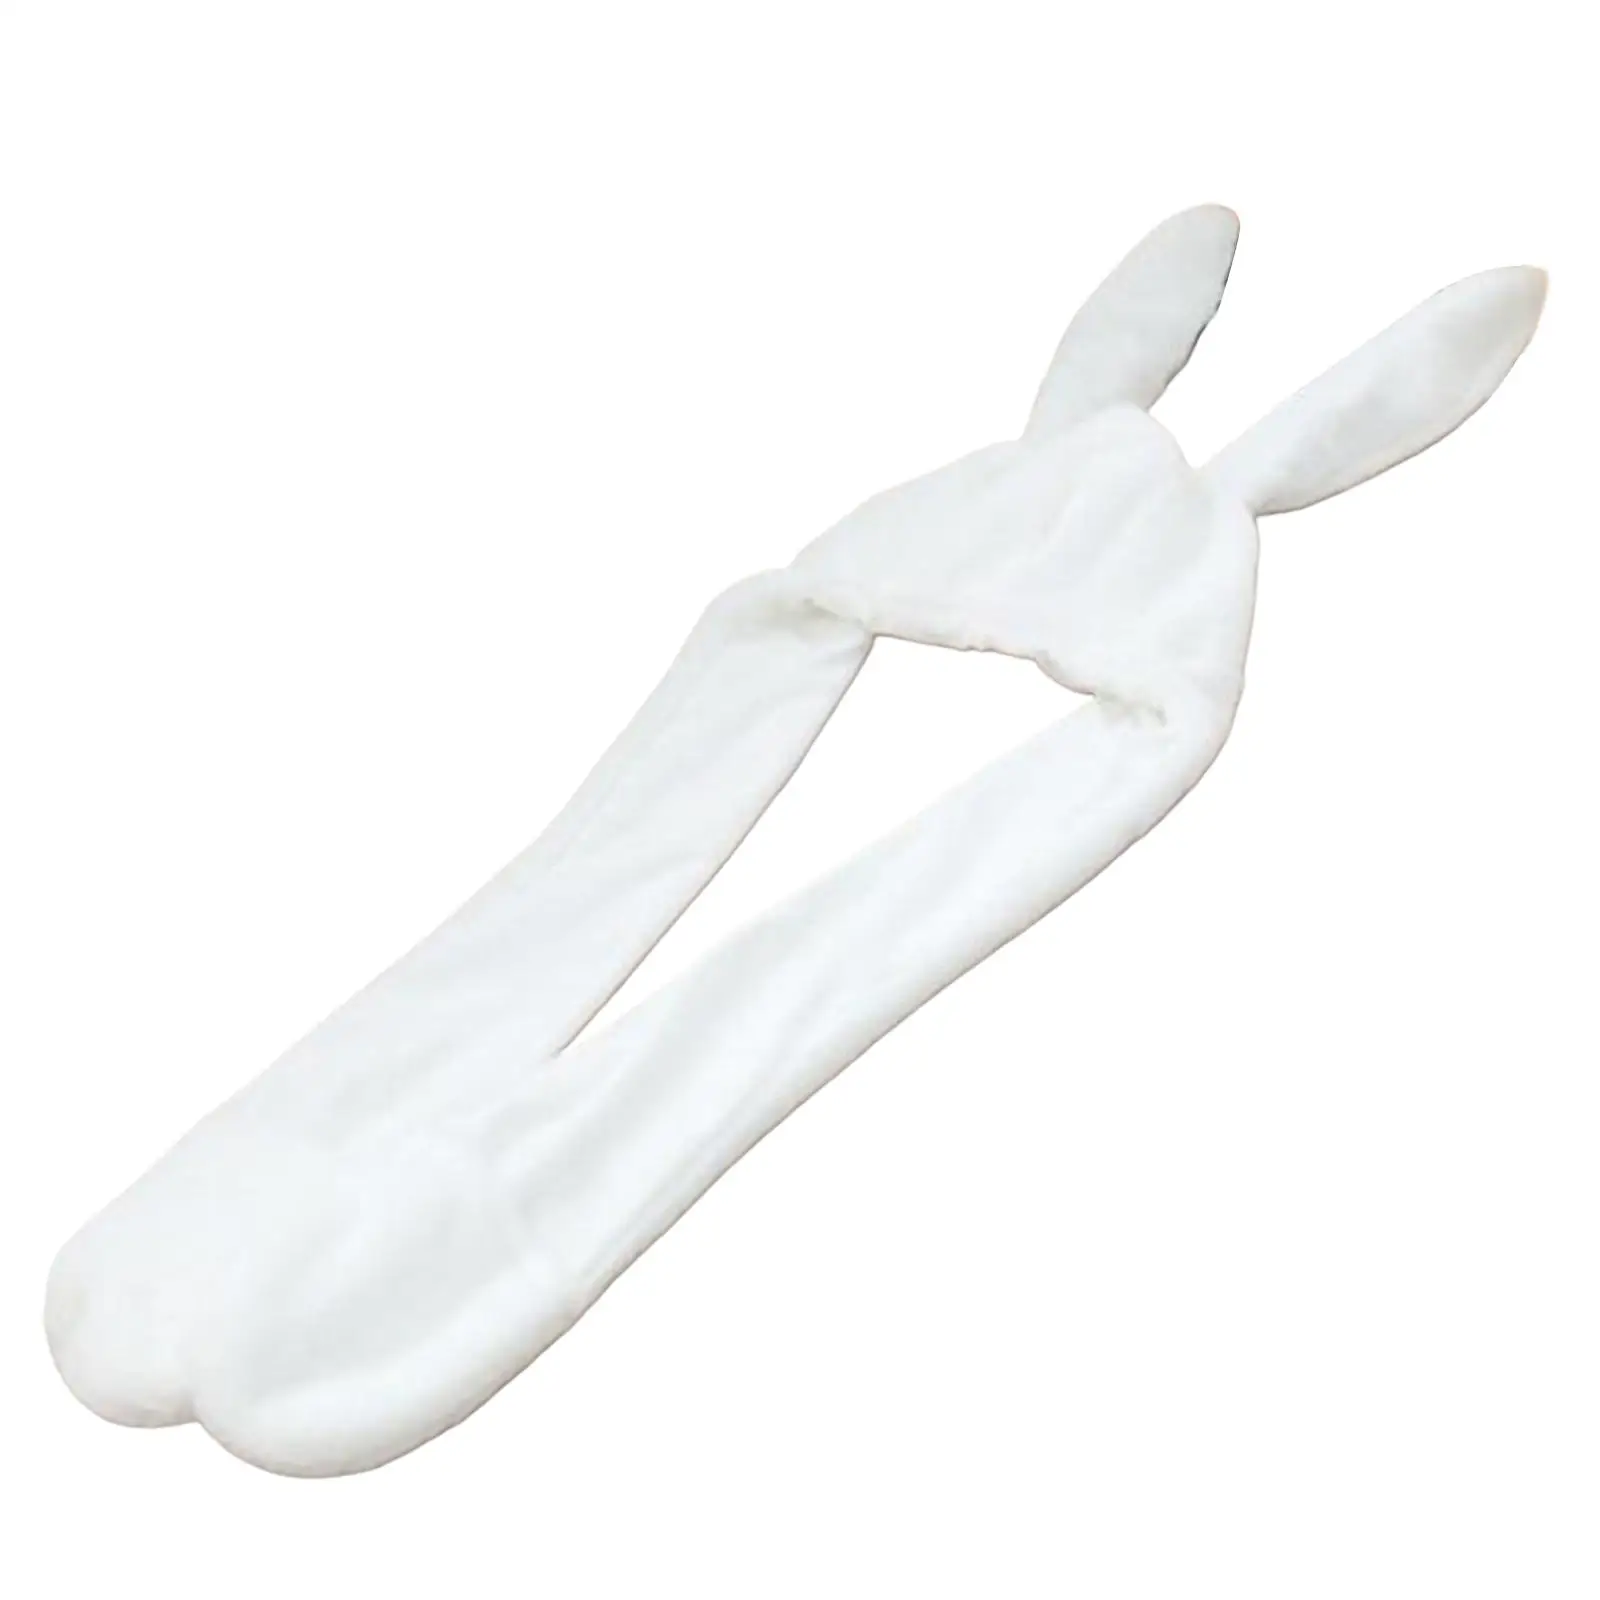 3 in 1 Plush Hat Gloves Scarf Apparel Accessories Head Warmer Ear Warming Props Bunny Ears Headwear for Women Men Adults